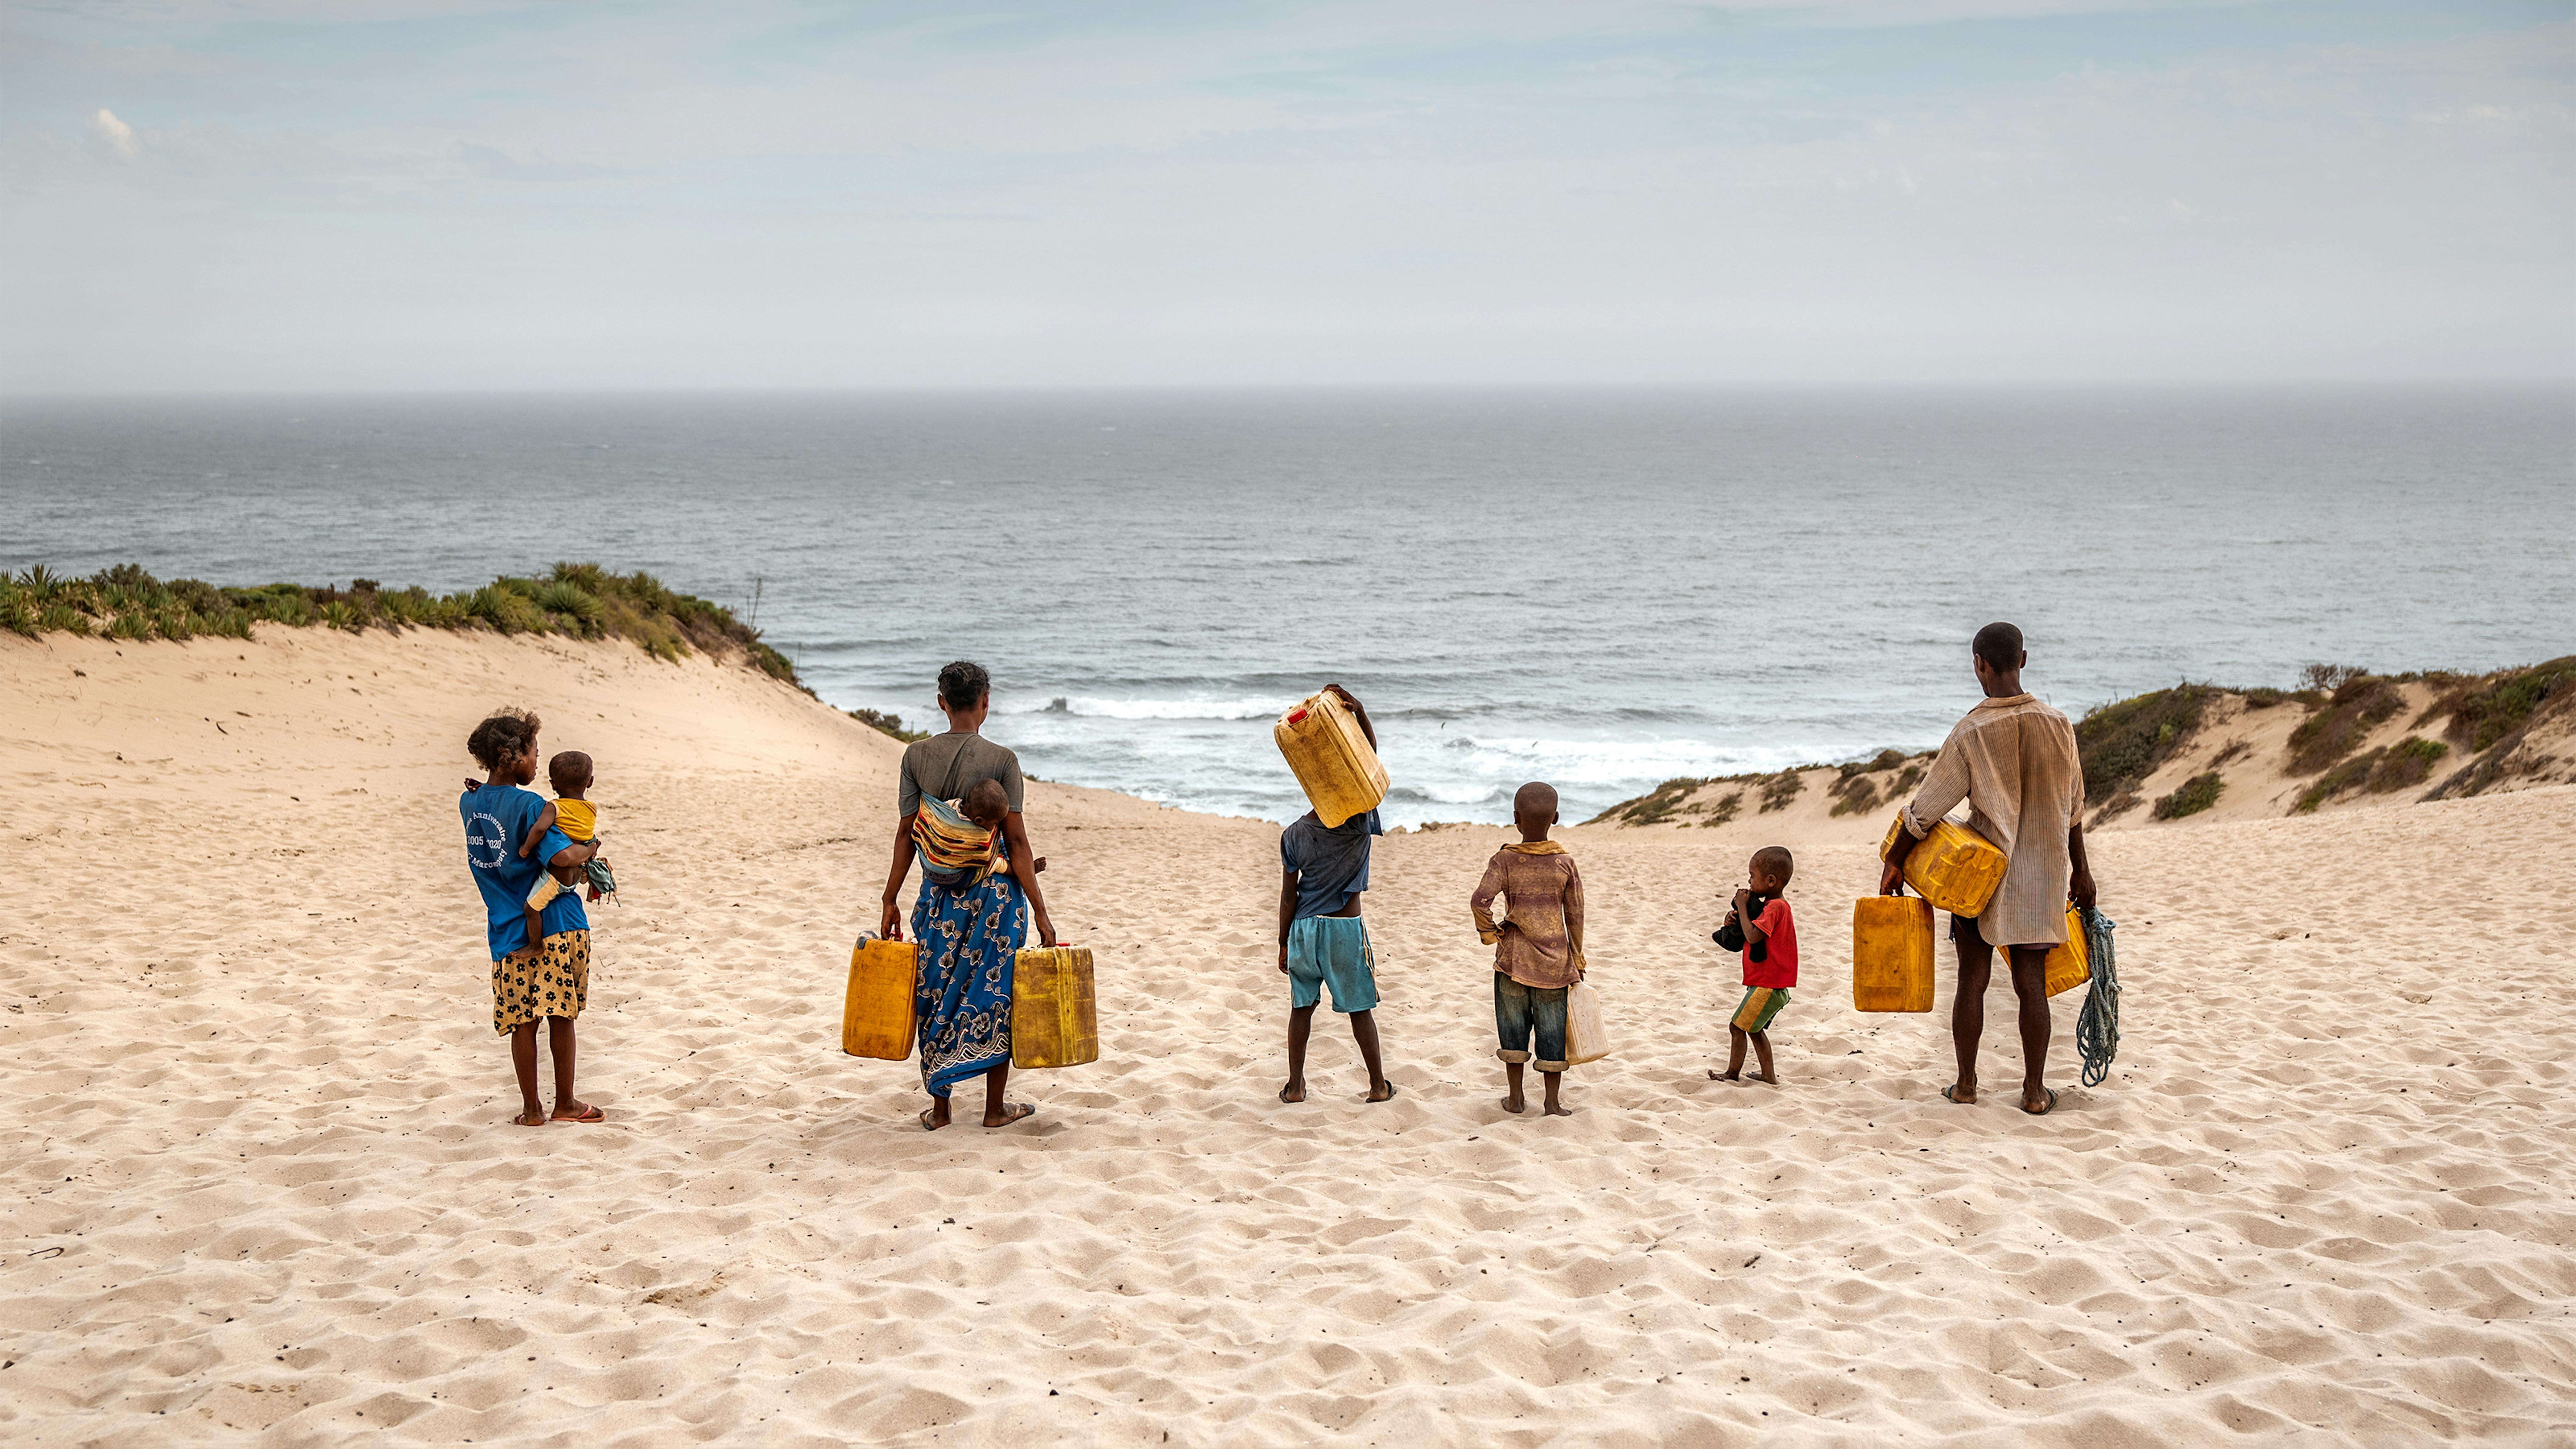 Madagascar, La famiglia di Sambo si dirige verso la spiaggia dove si trova un pozzo. L'unica fonte di acqua potabile